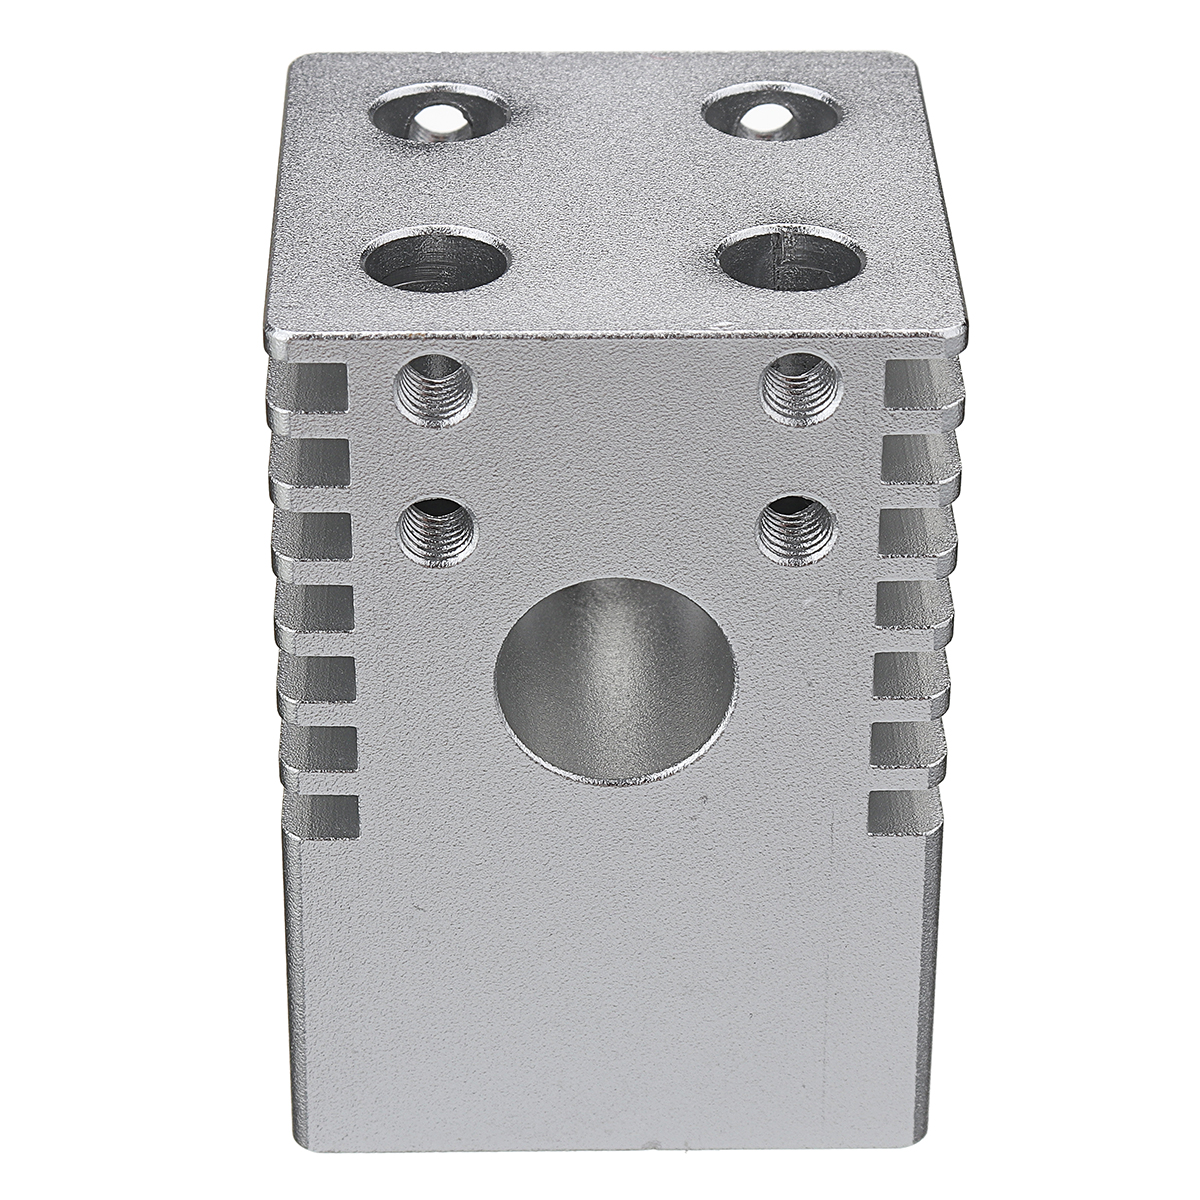 353550mm-Ultimaker2-Aluminum-Alloy-Cross-Slide-4-Nozzles-for-3D-Printer-1284045-5